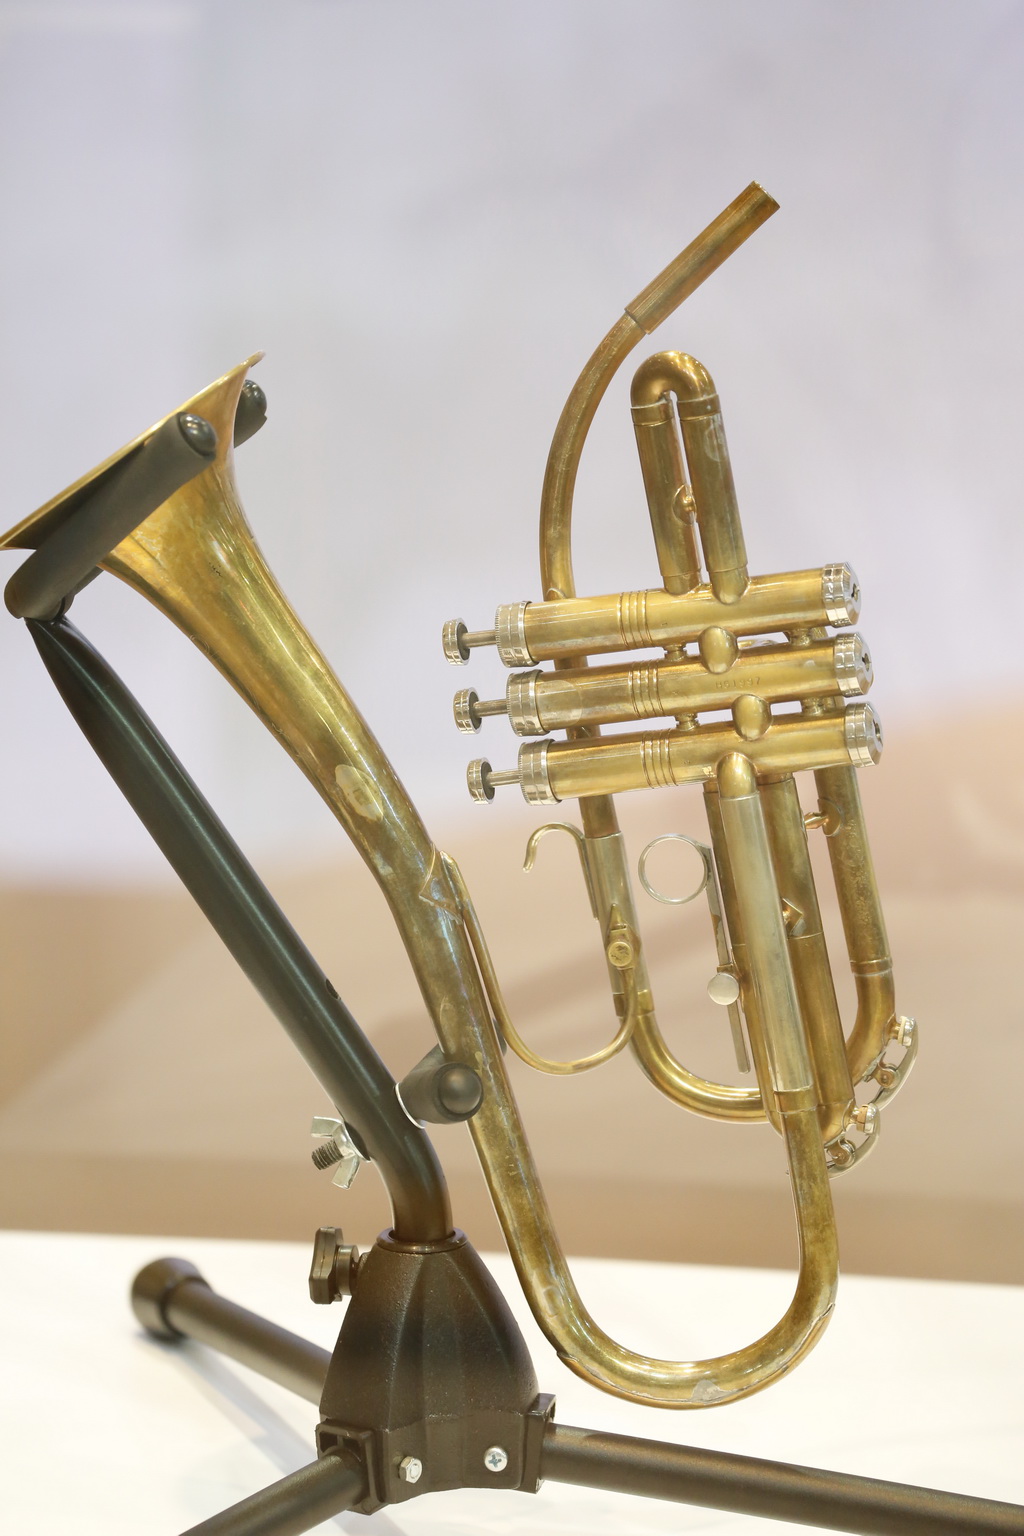 Jazzophone Trumpet หจก.รีแพร์โมดิฟายด์ฯ ผลิตทรัมเป็ตชิ้นพิเศษให้ ทรงได้โดยไม่ต้องยกพระกรขึ้น ขณะที่ประทับรพ.ศิริราช